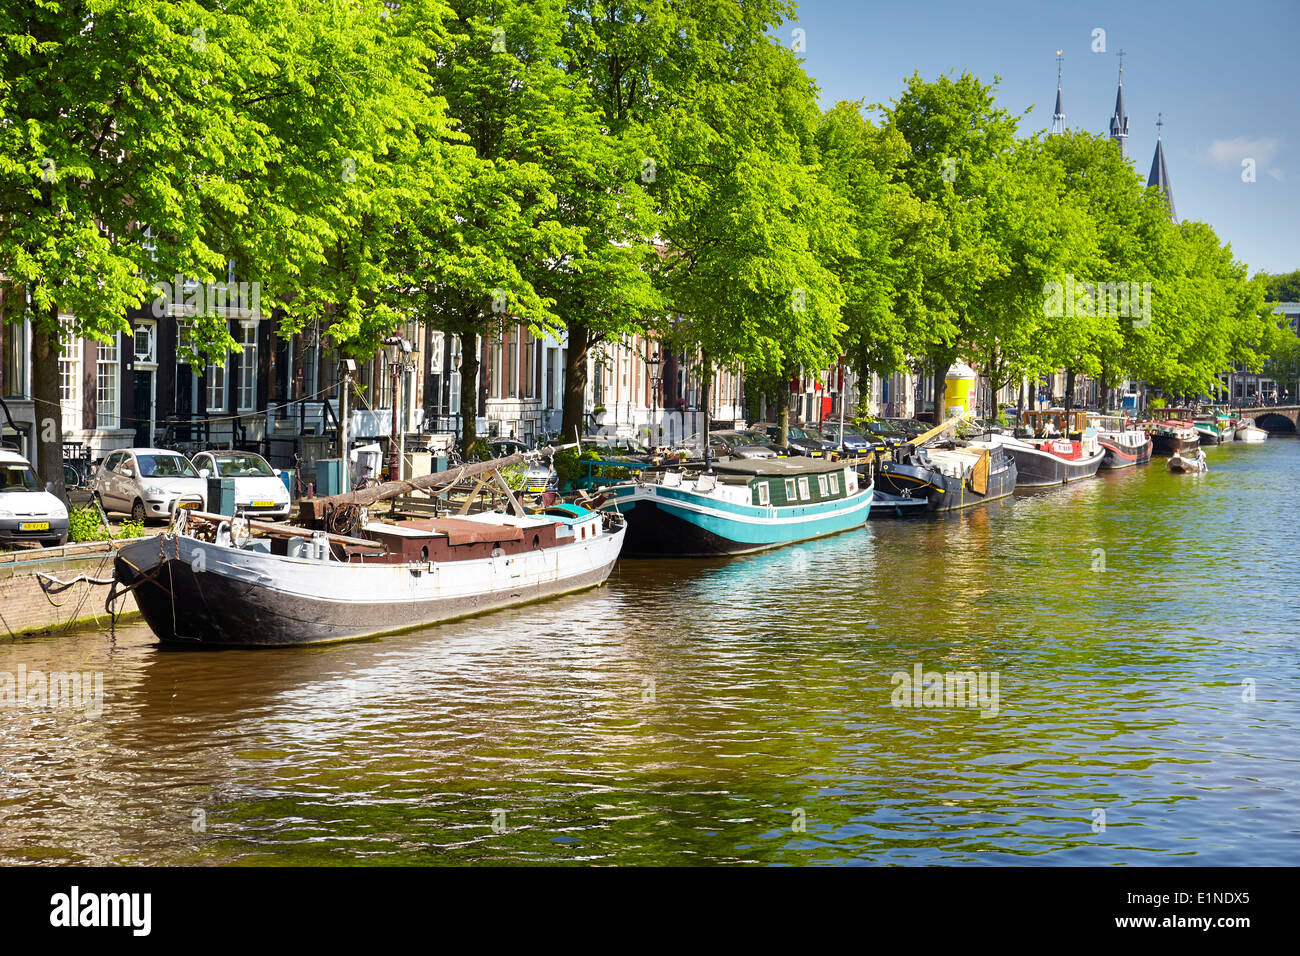 Péniche péniche, canal à Amsterdam - Hollande Pays-Bas Banque D'Images